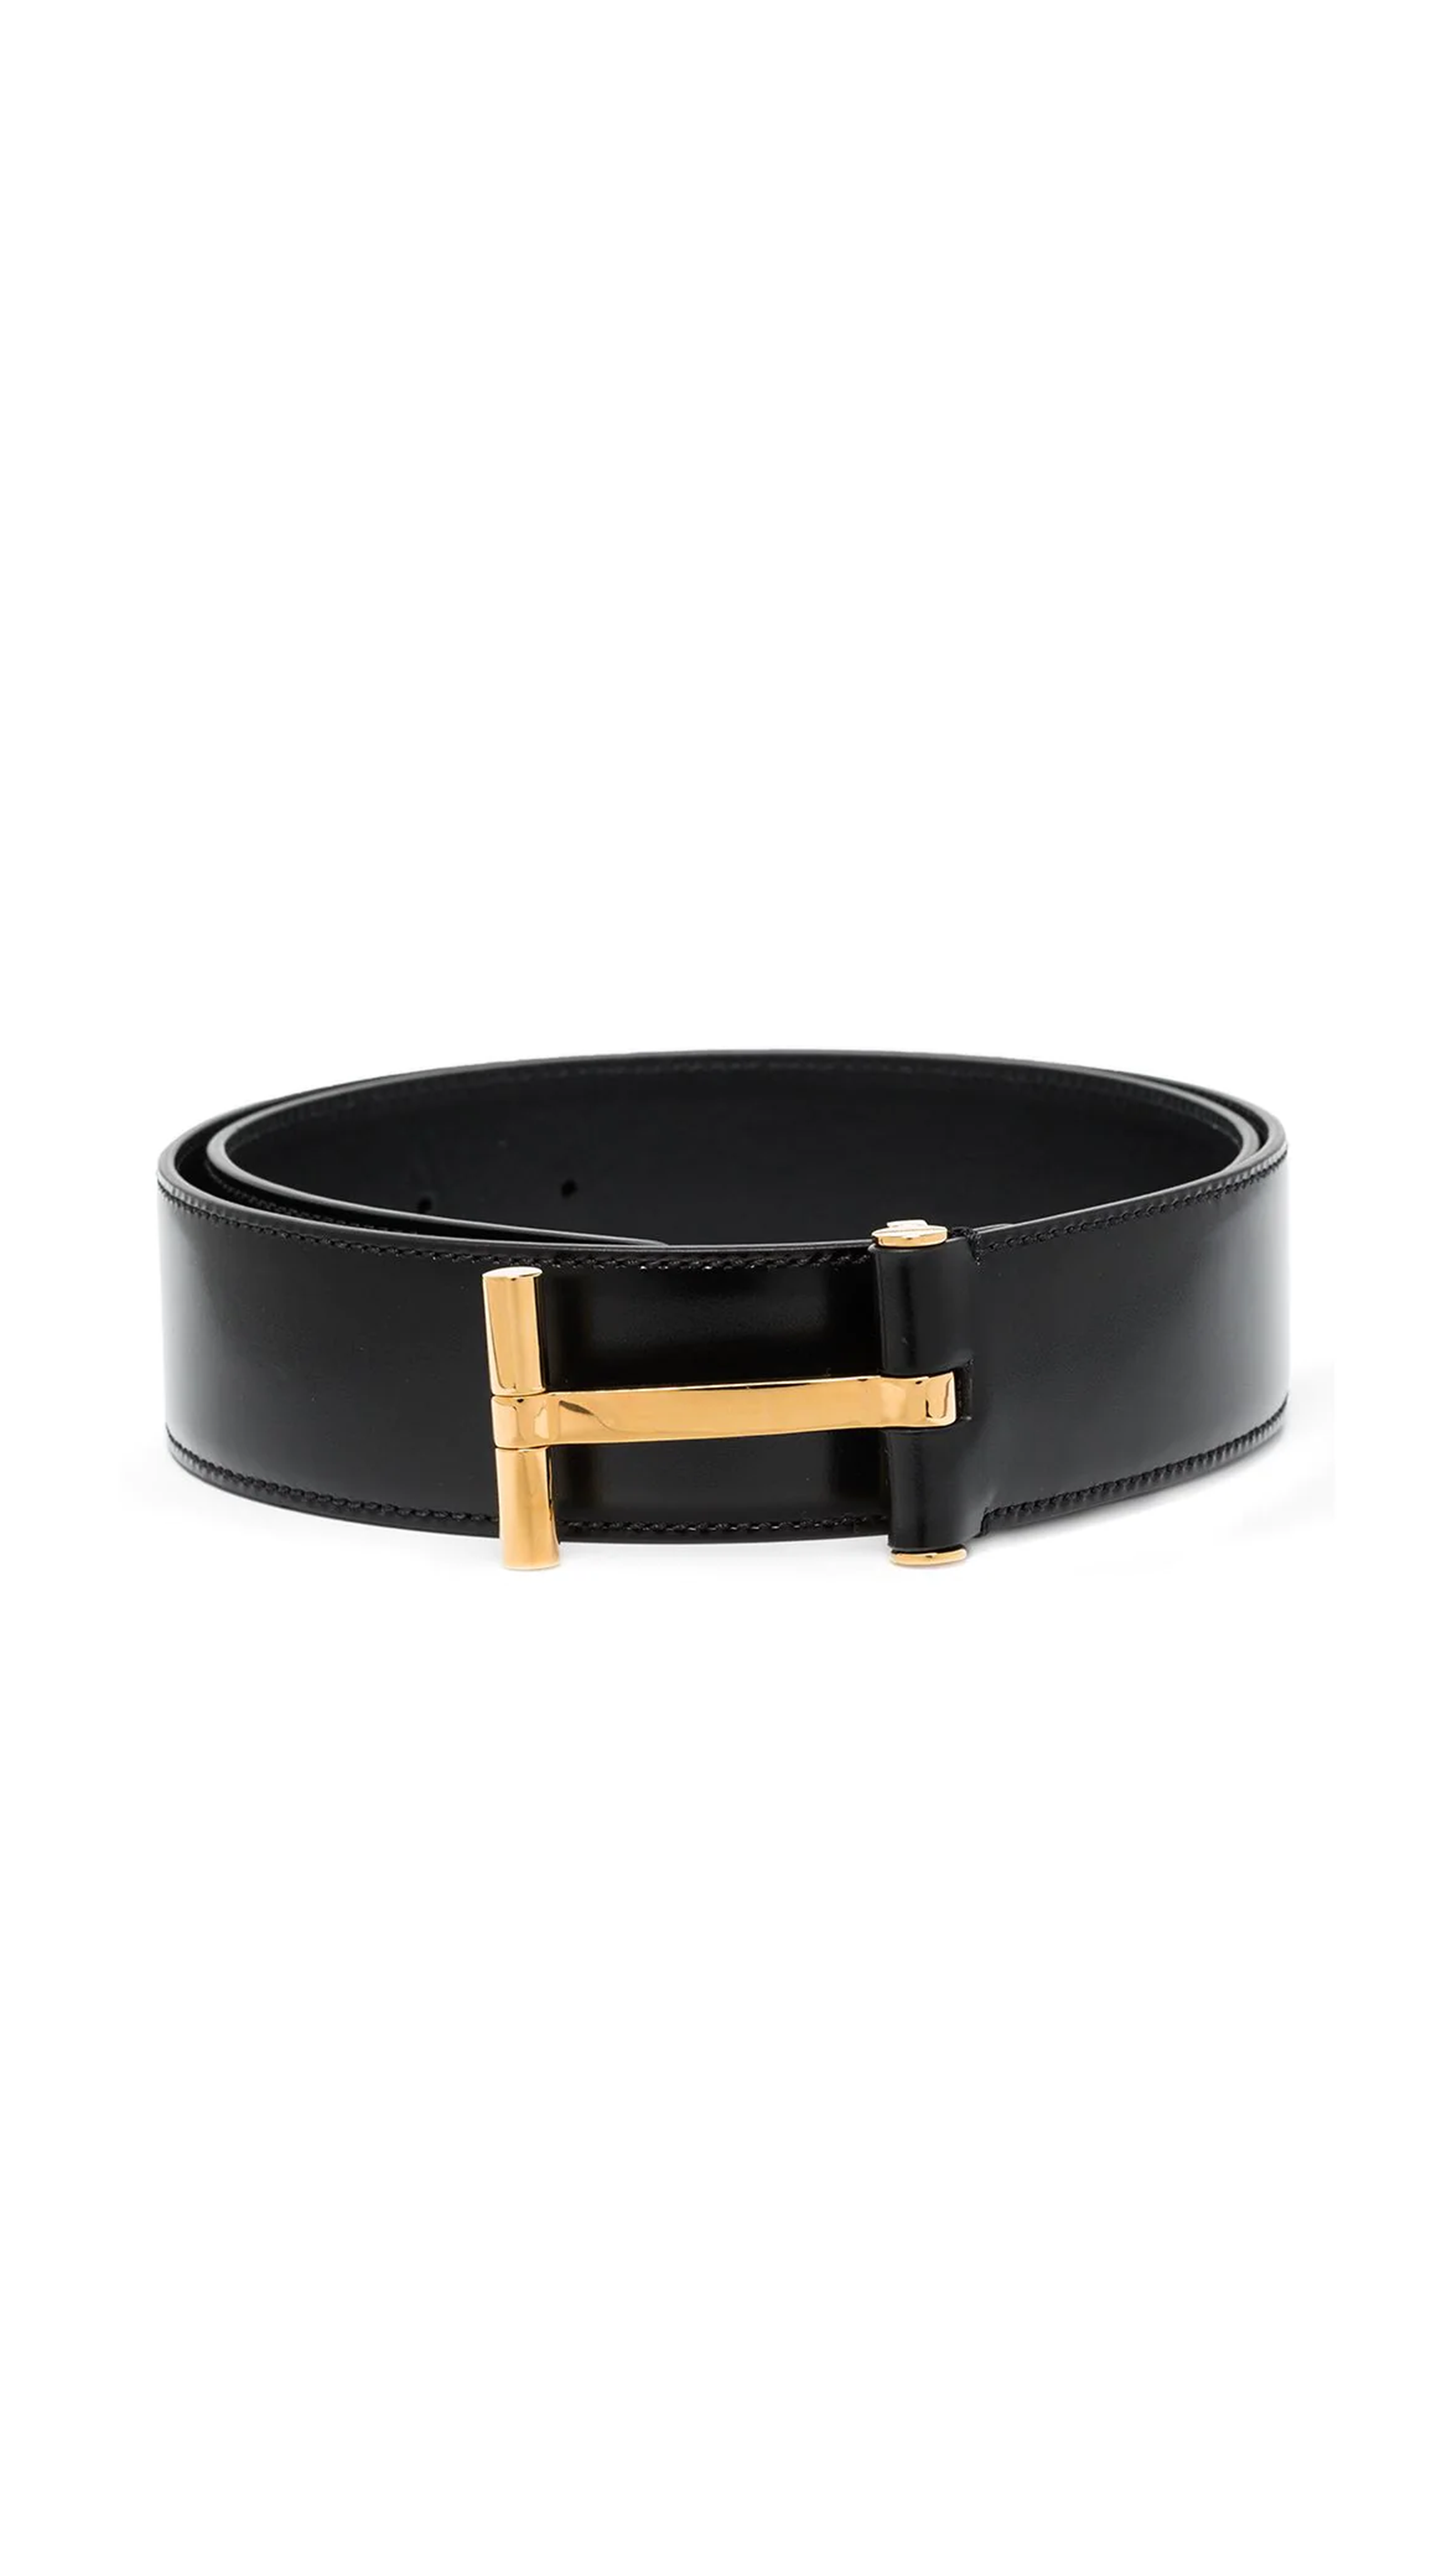 T-buckle Belt - Black